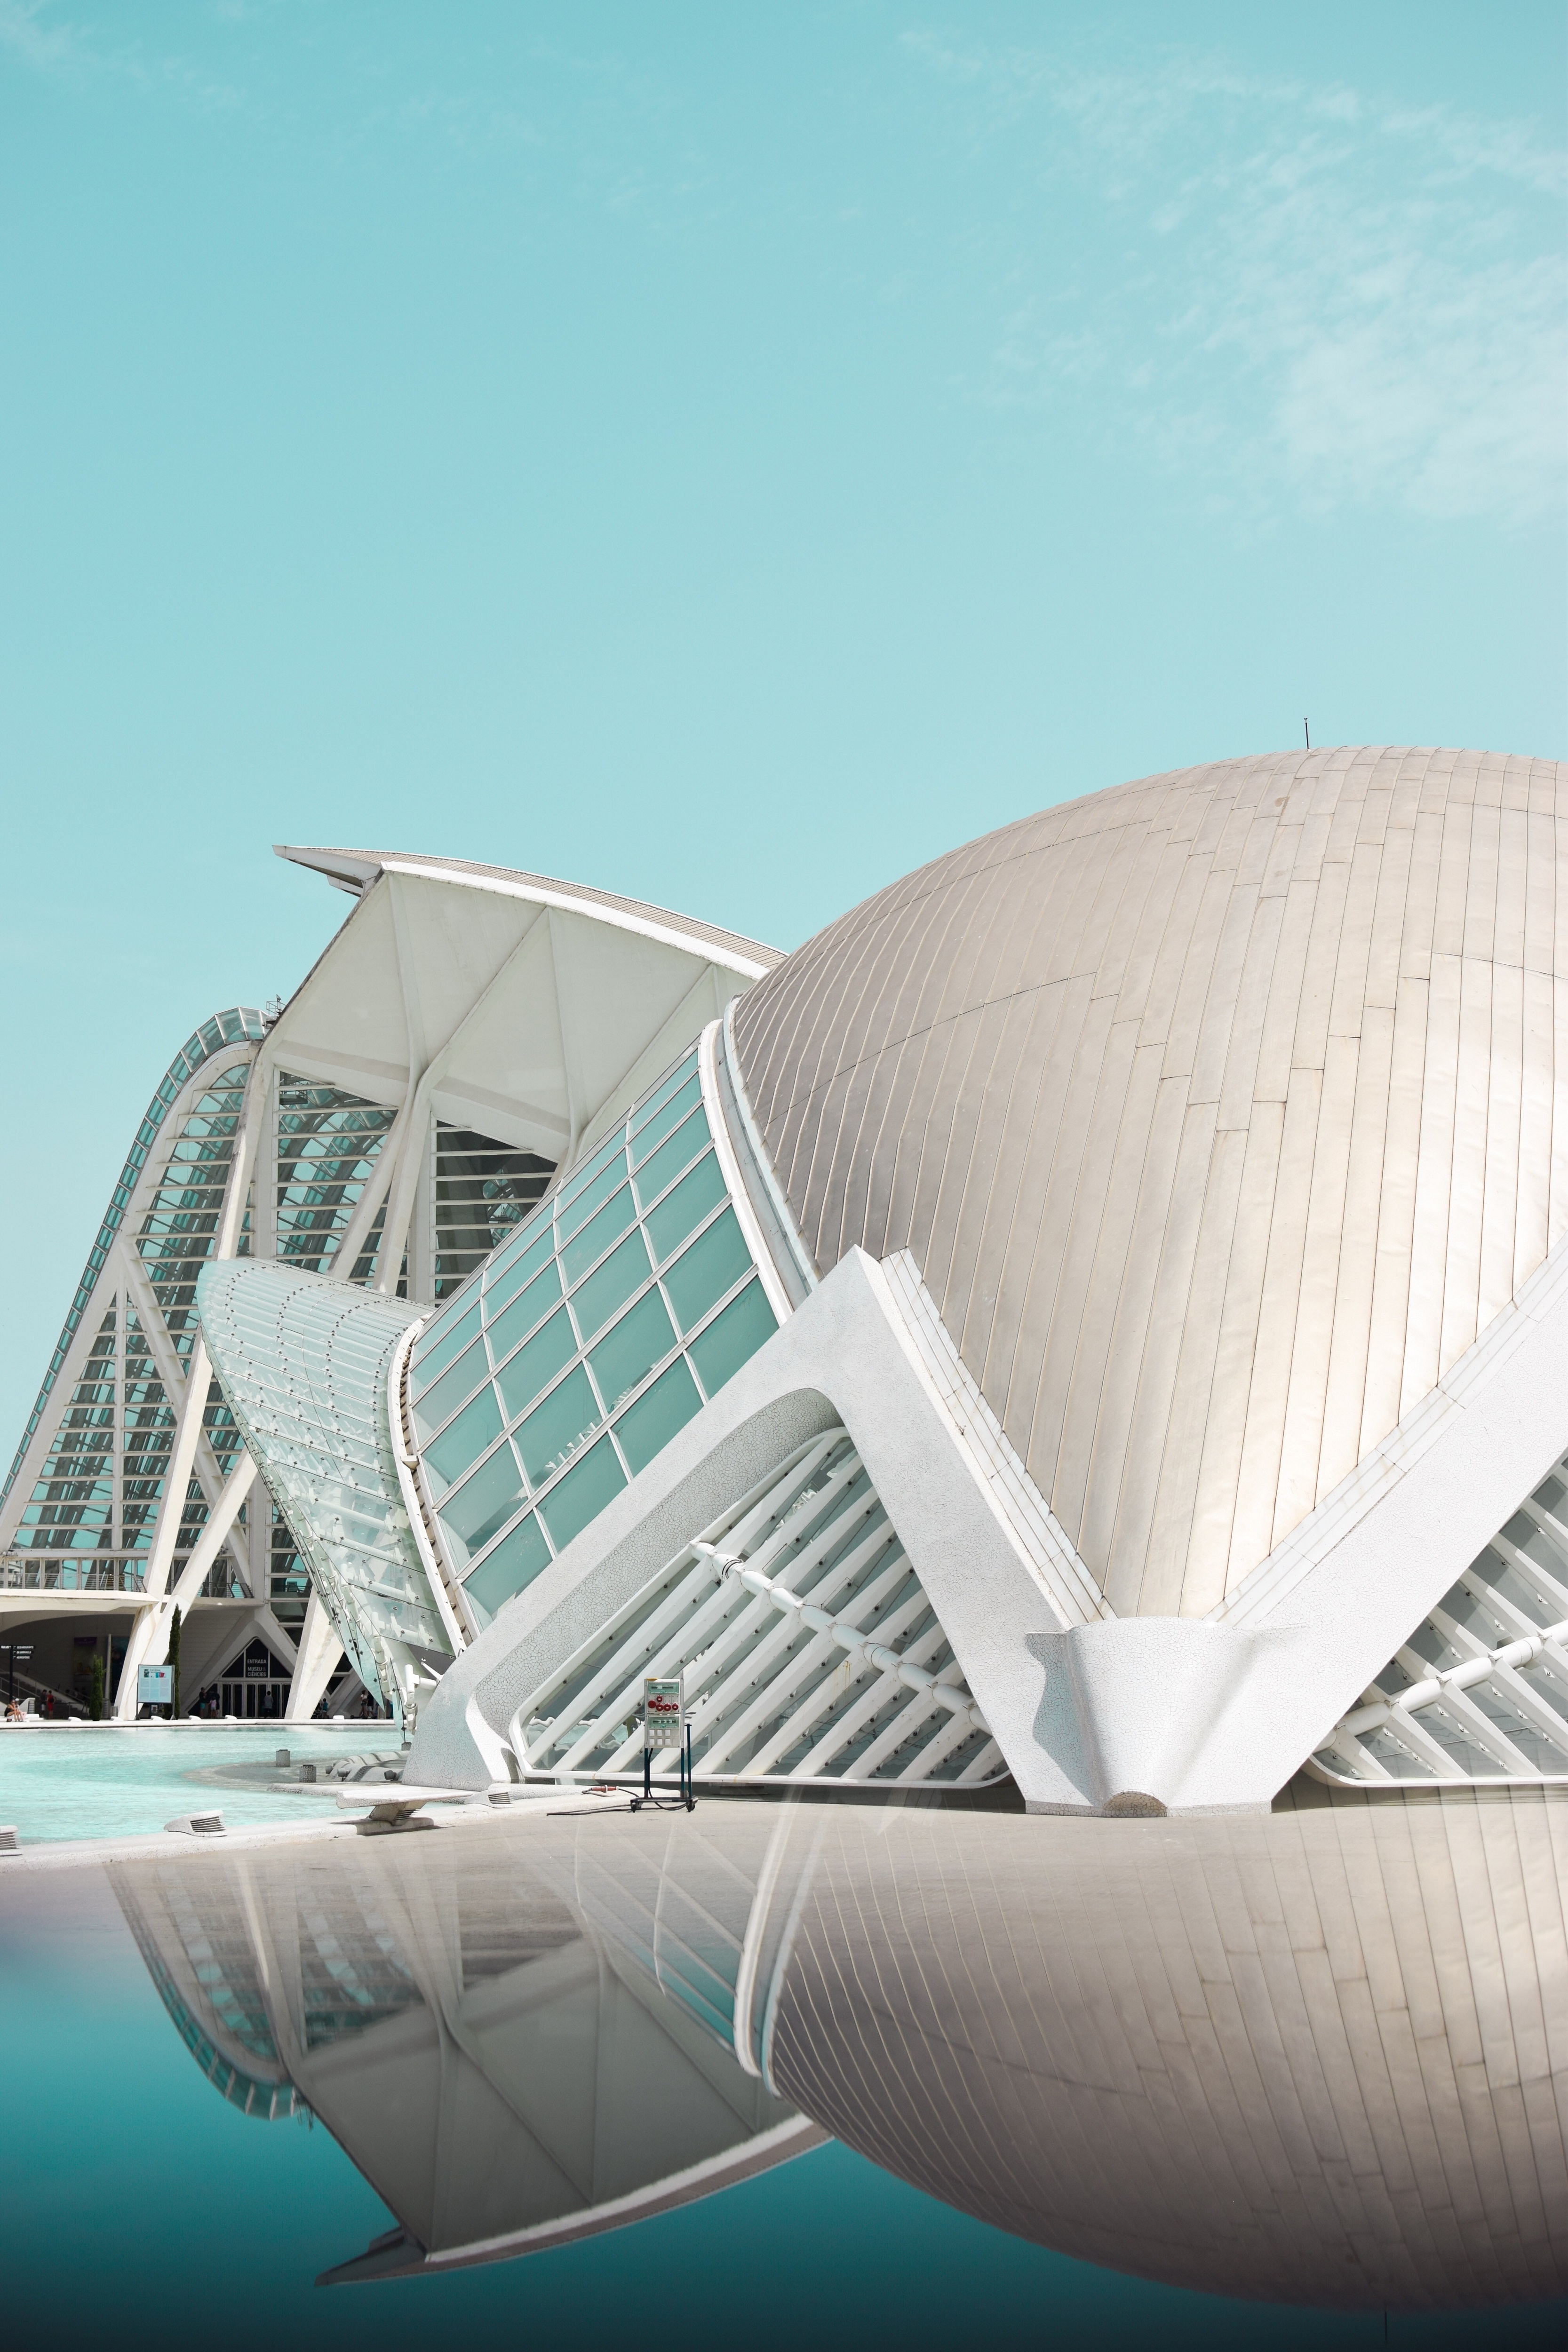 Imparare lo spagnolo in Spagna: perchè scegliere Valencia, Città delle Arti e delle Scienze